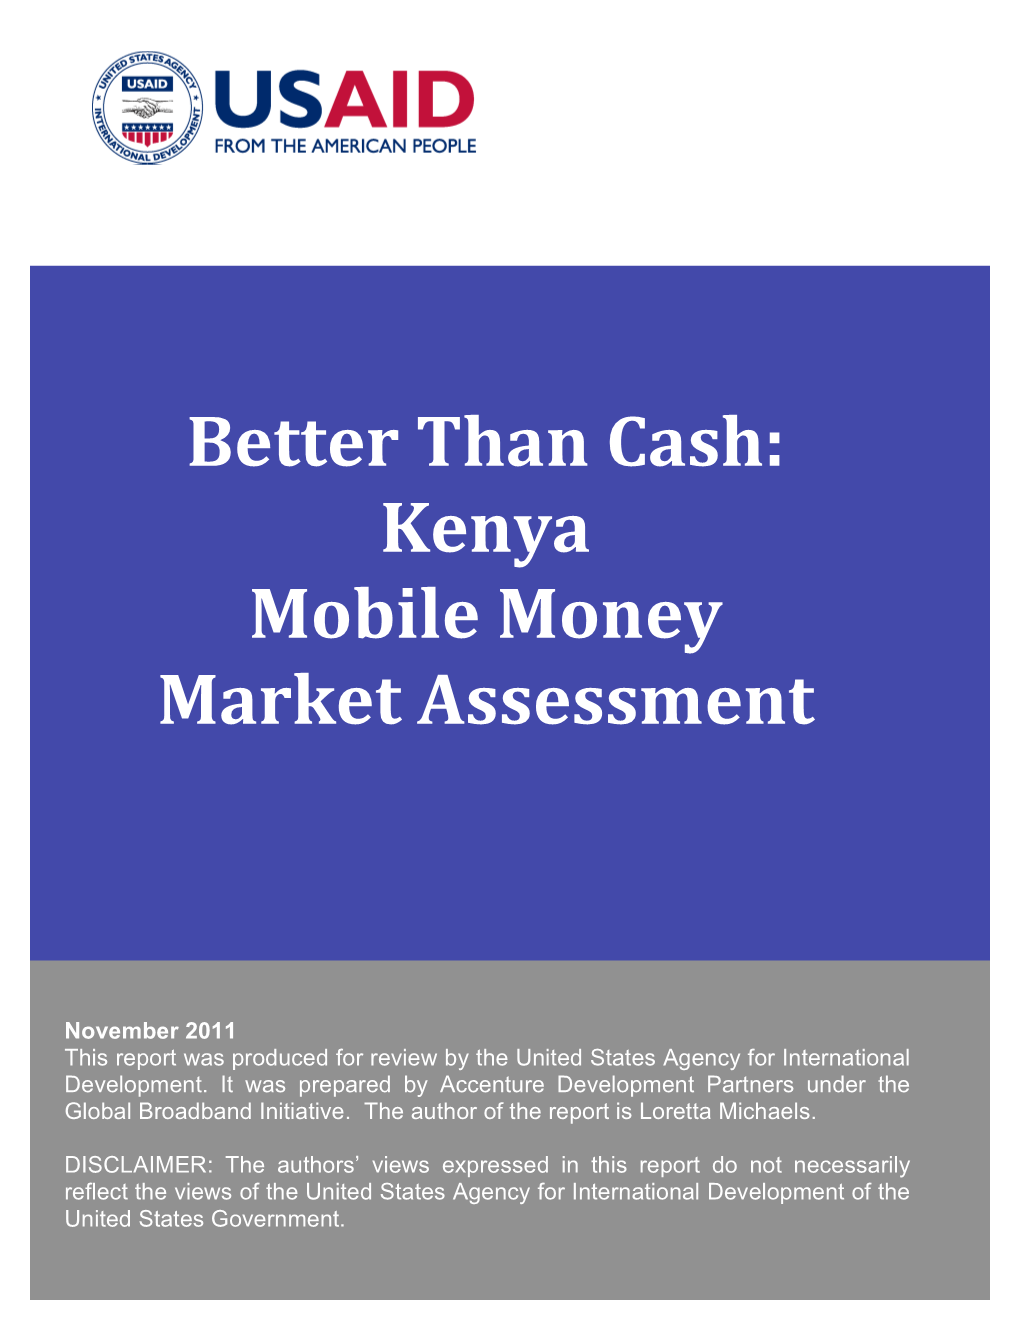 Kenya Mobile Money Market Assessment